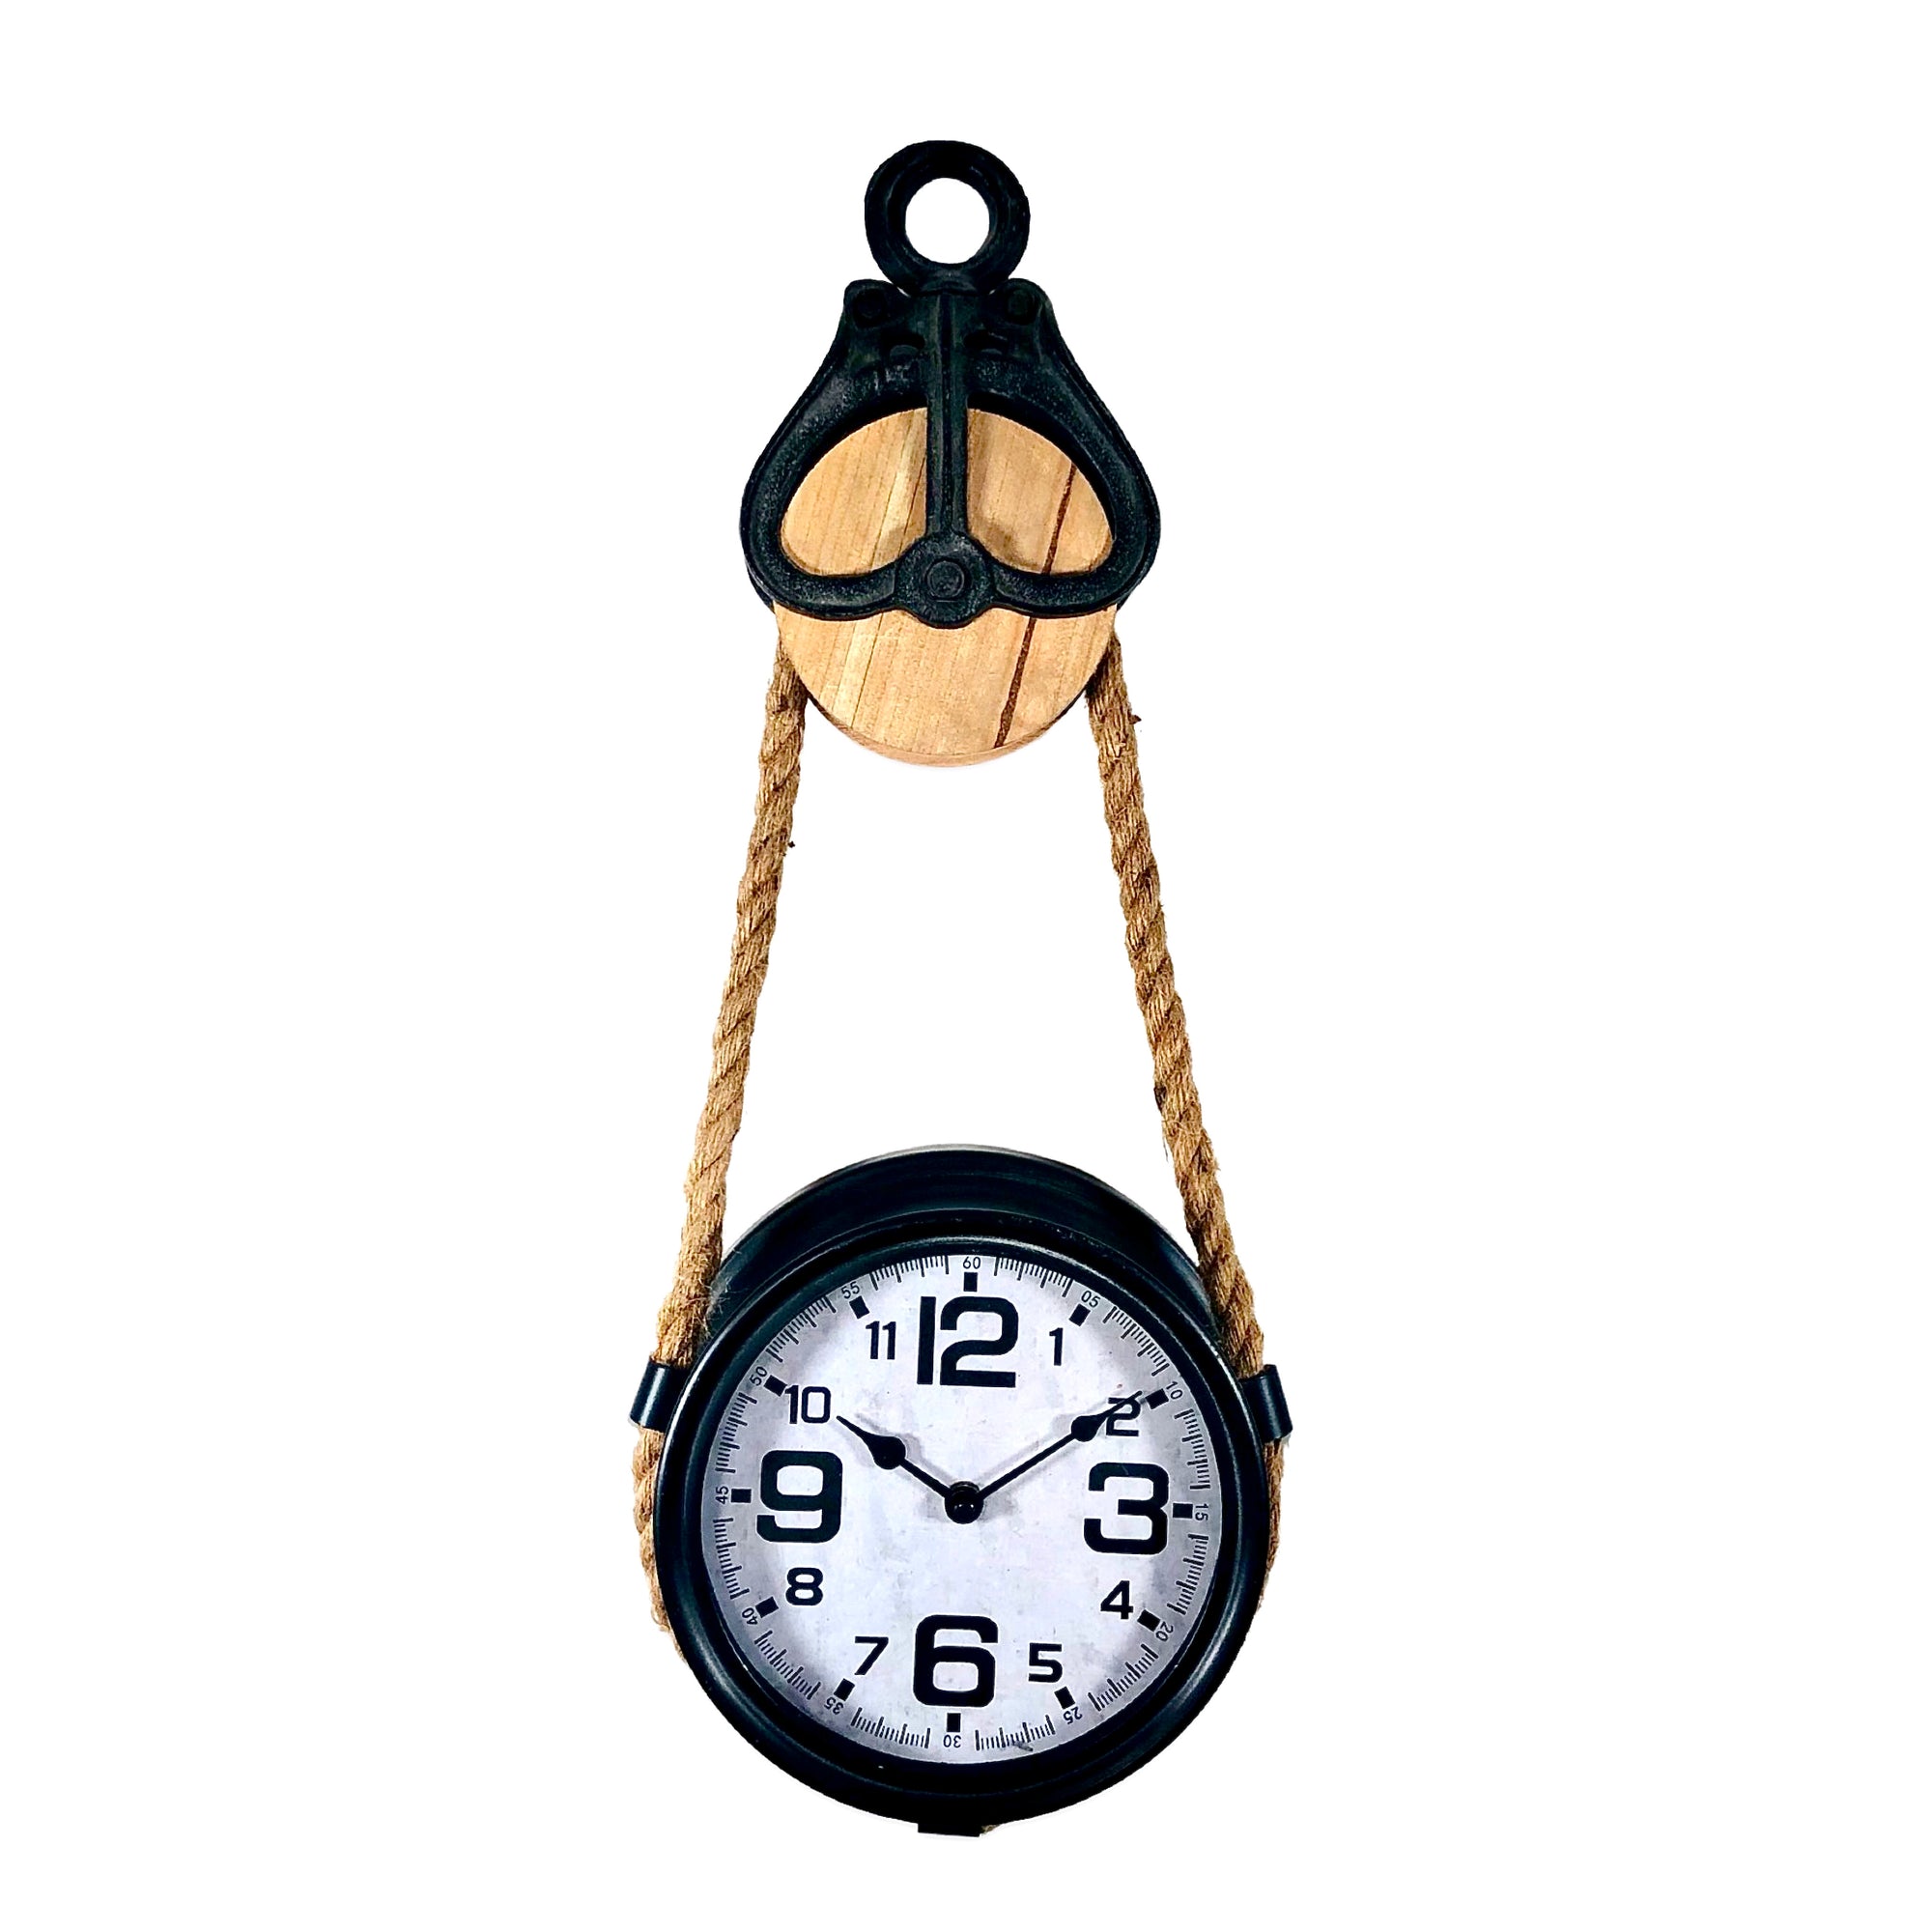 Pully Wall Clock